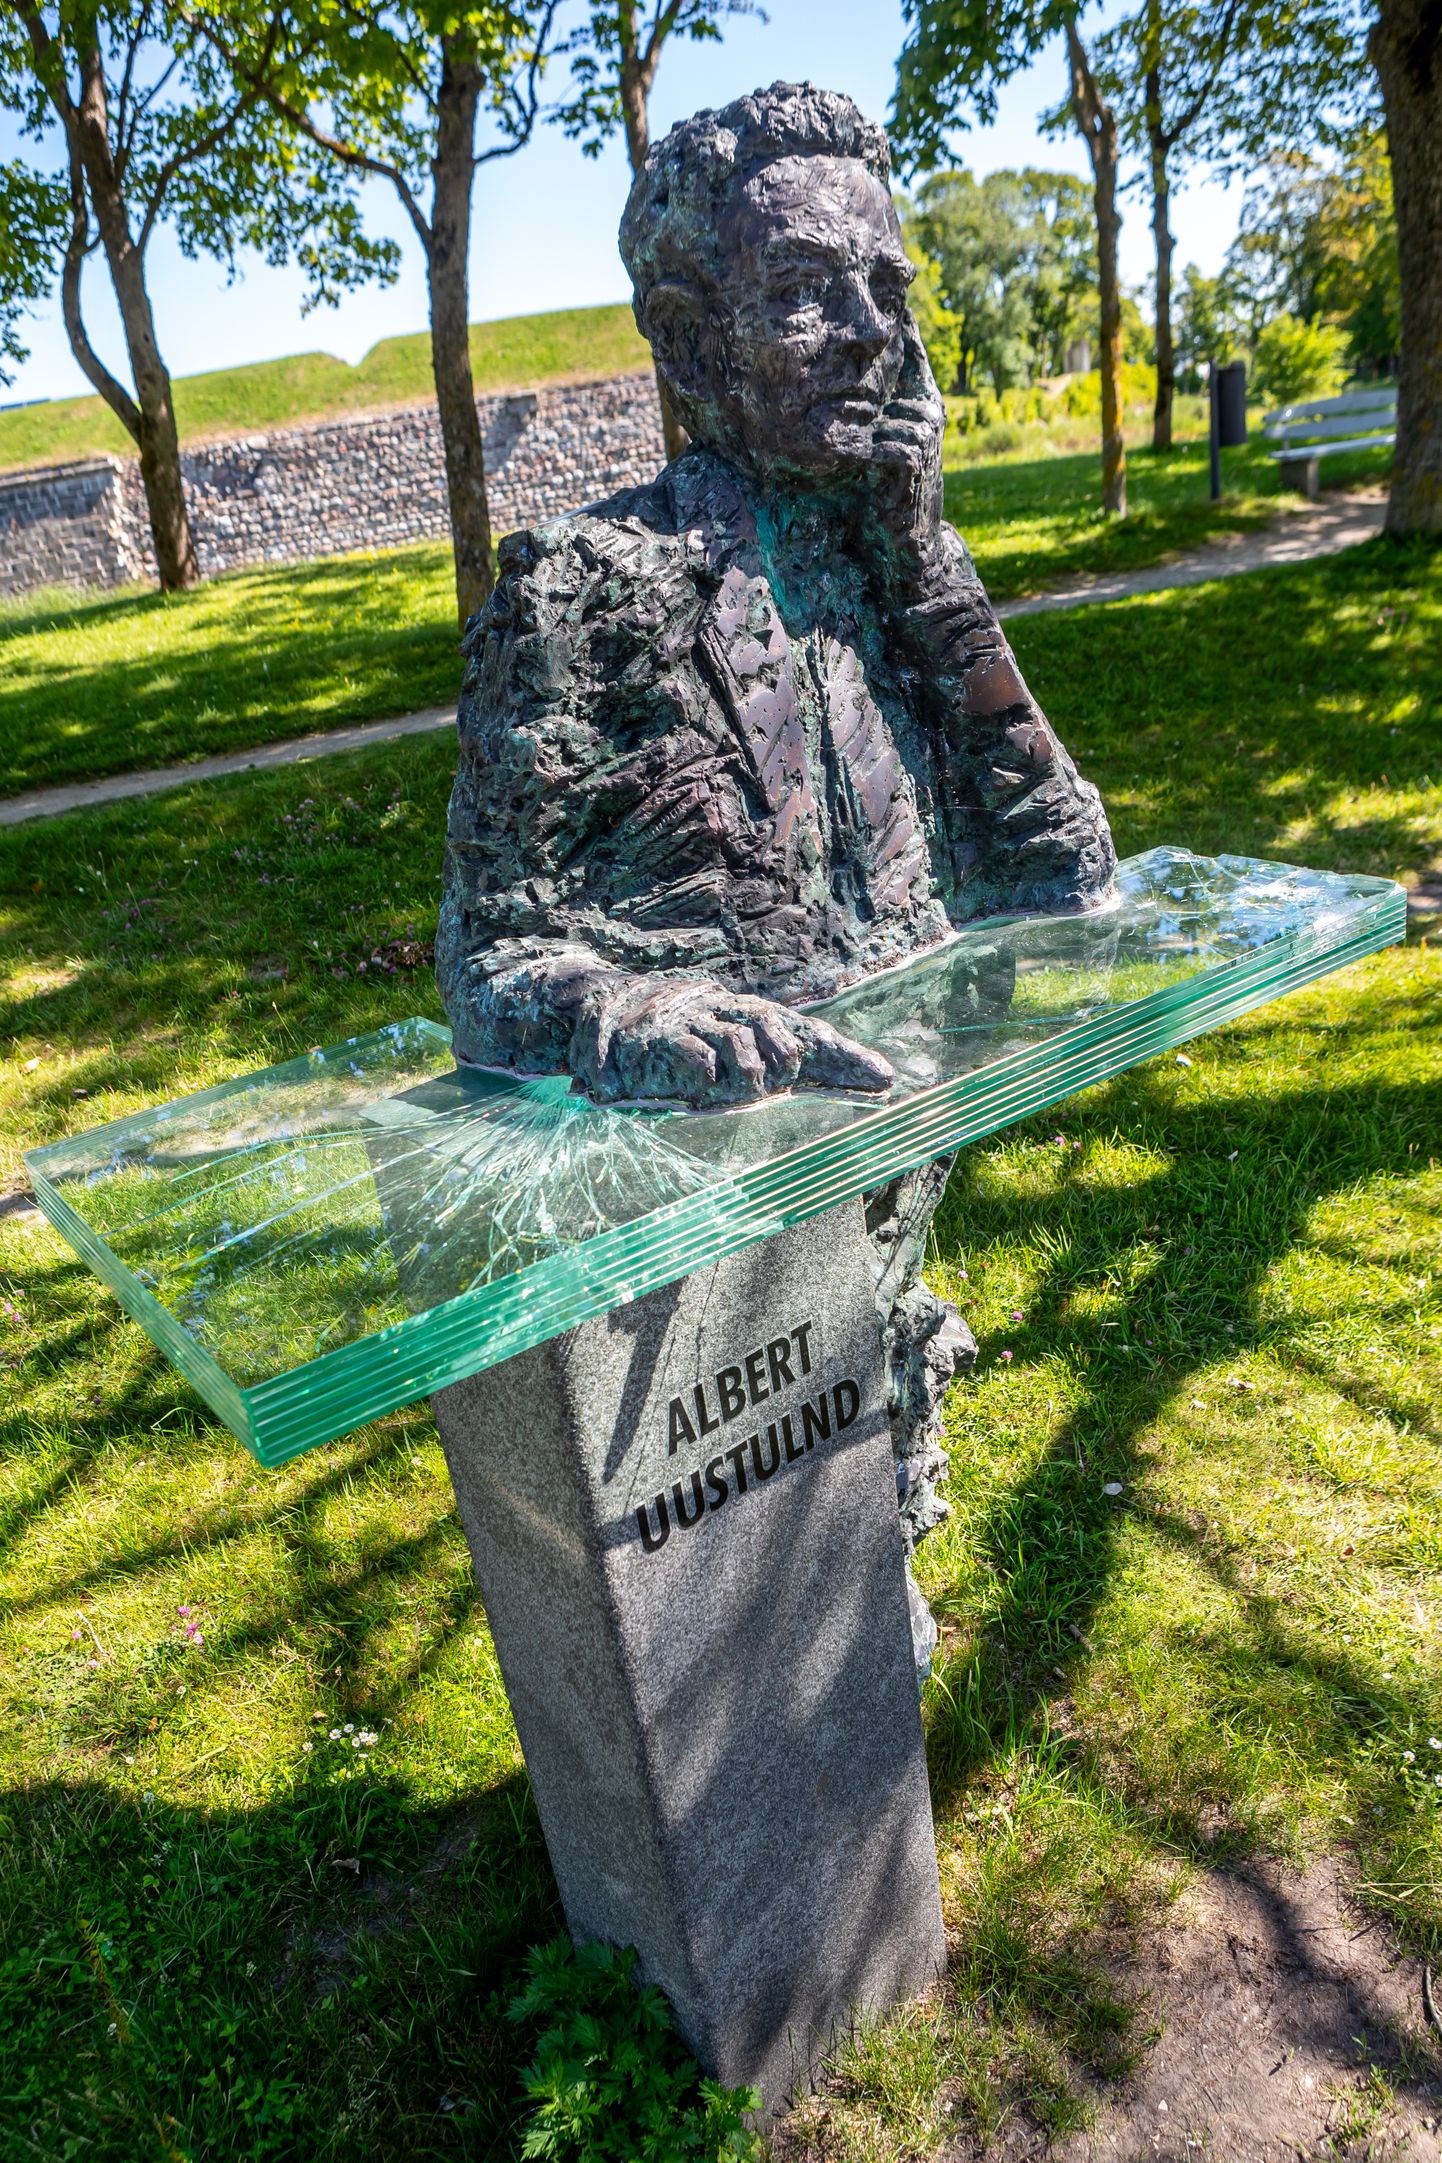 Albert Uustulndi lõhutud monument.